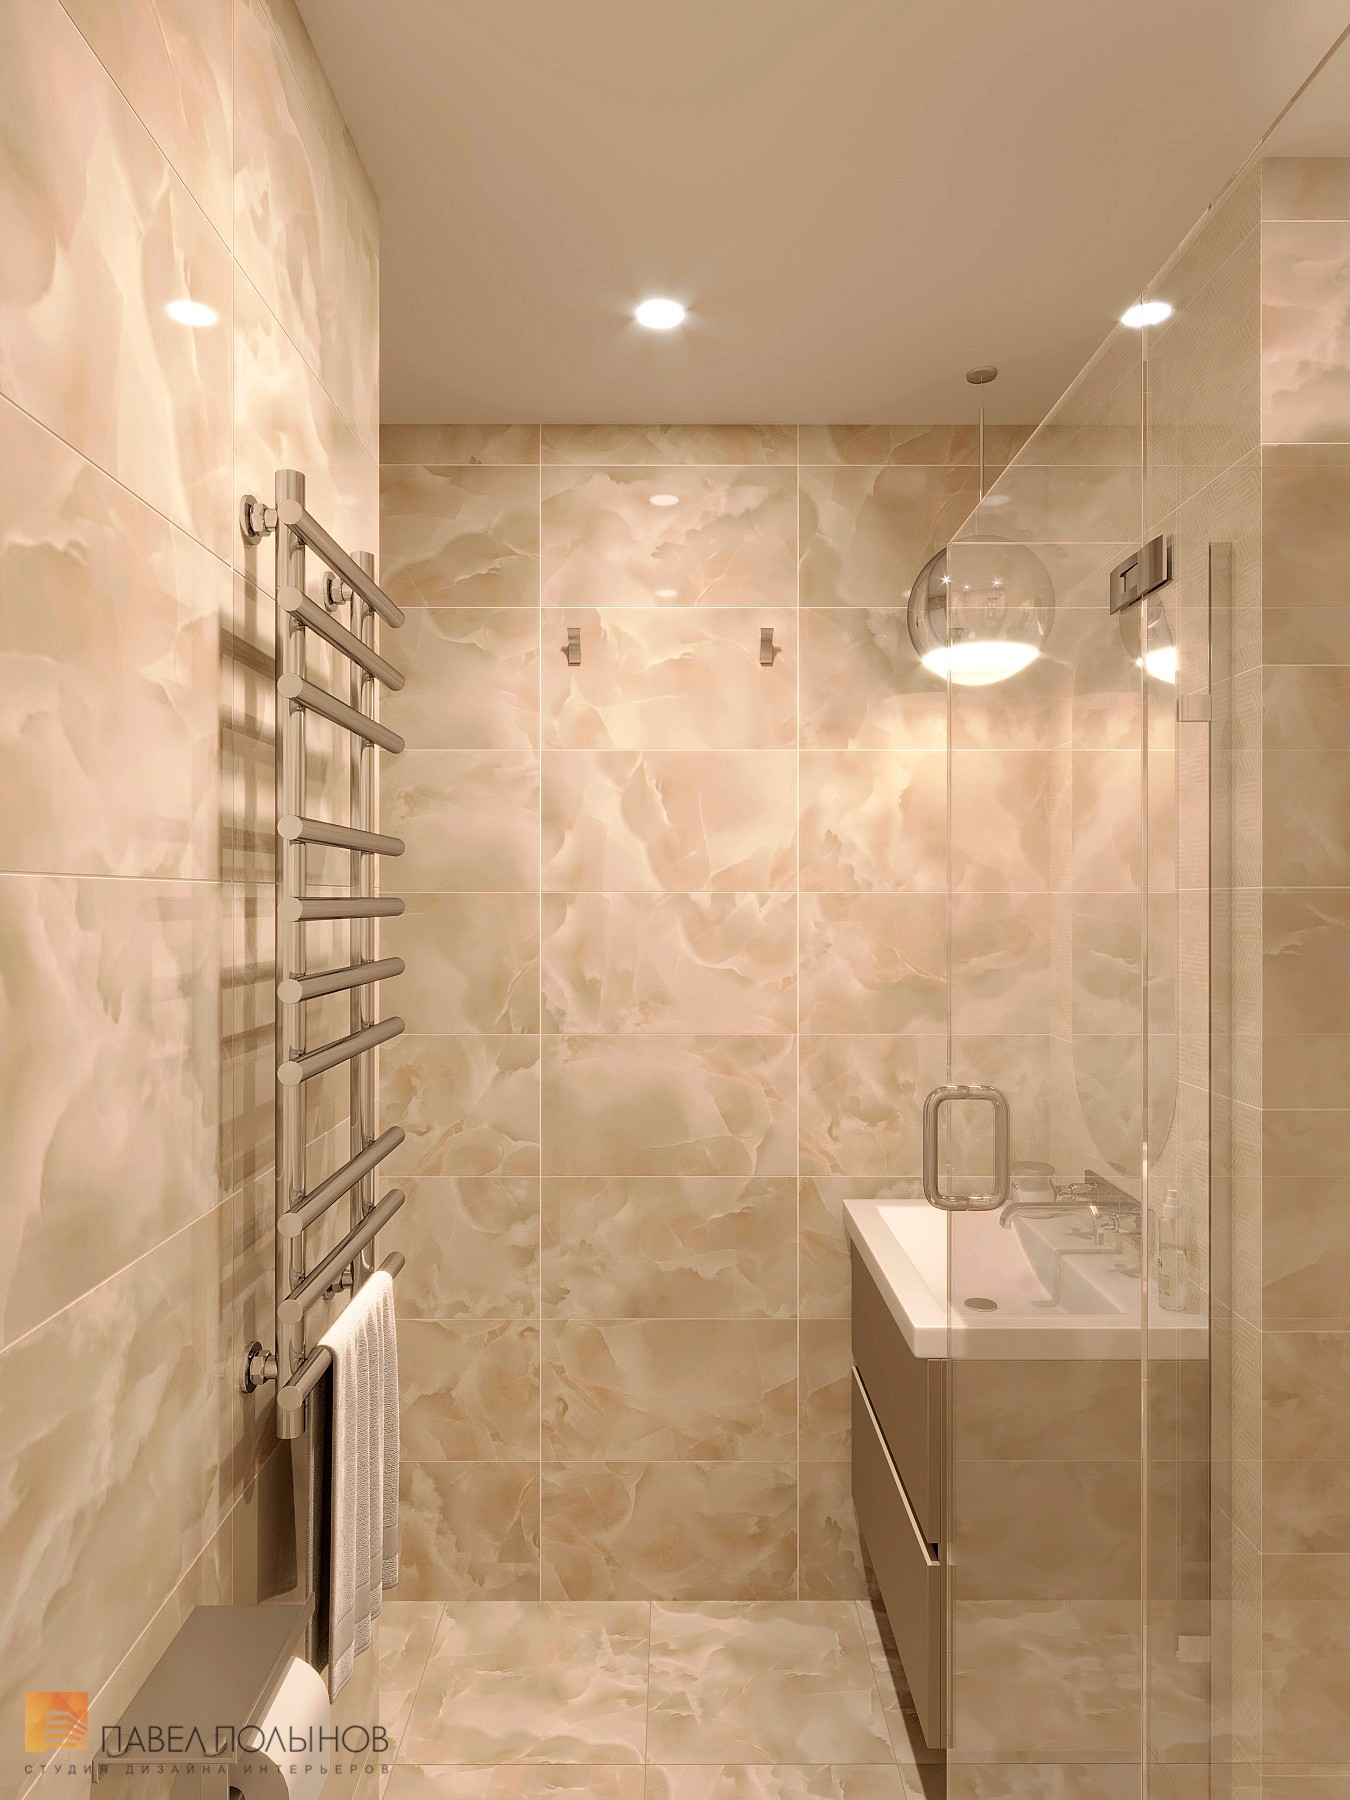 Фото дизайн интерьера ванной комнаты из проекта «Интерьер квартиры 140 кв.м. в стиле неоклассики»